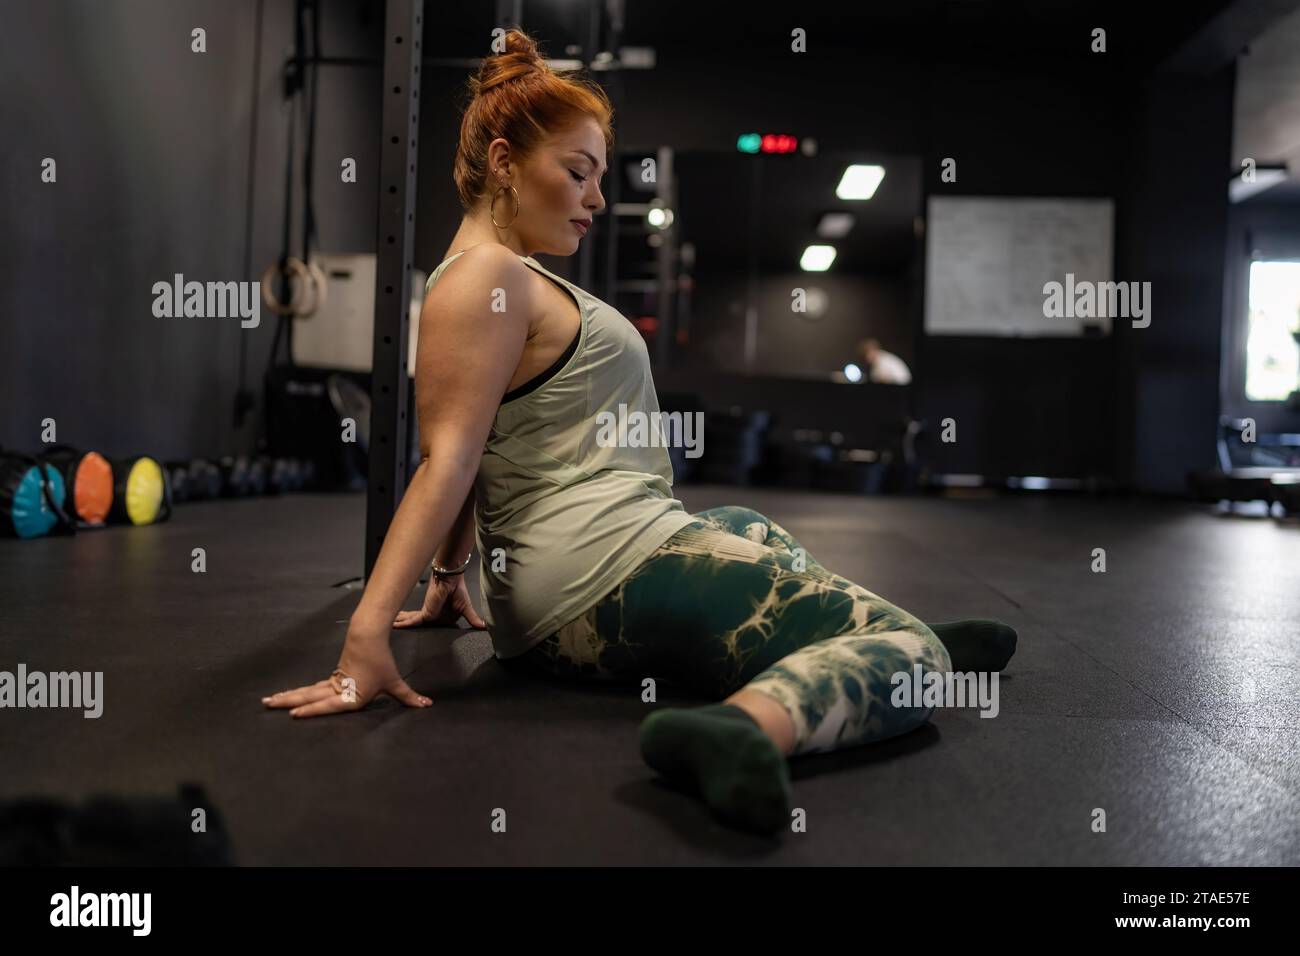 Une femme aux cheveux roux attachée dans un chignon, vêtue de vêtements de sport, effectue un exercice d'étirement sur le sol de la salle de gym. Elle est concentrée sur son entraînement, démonstrat Banque D'Images